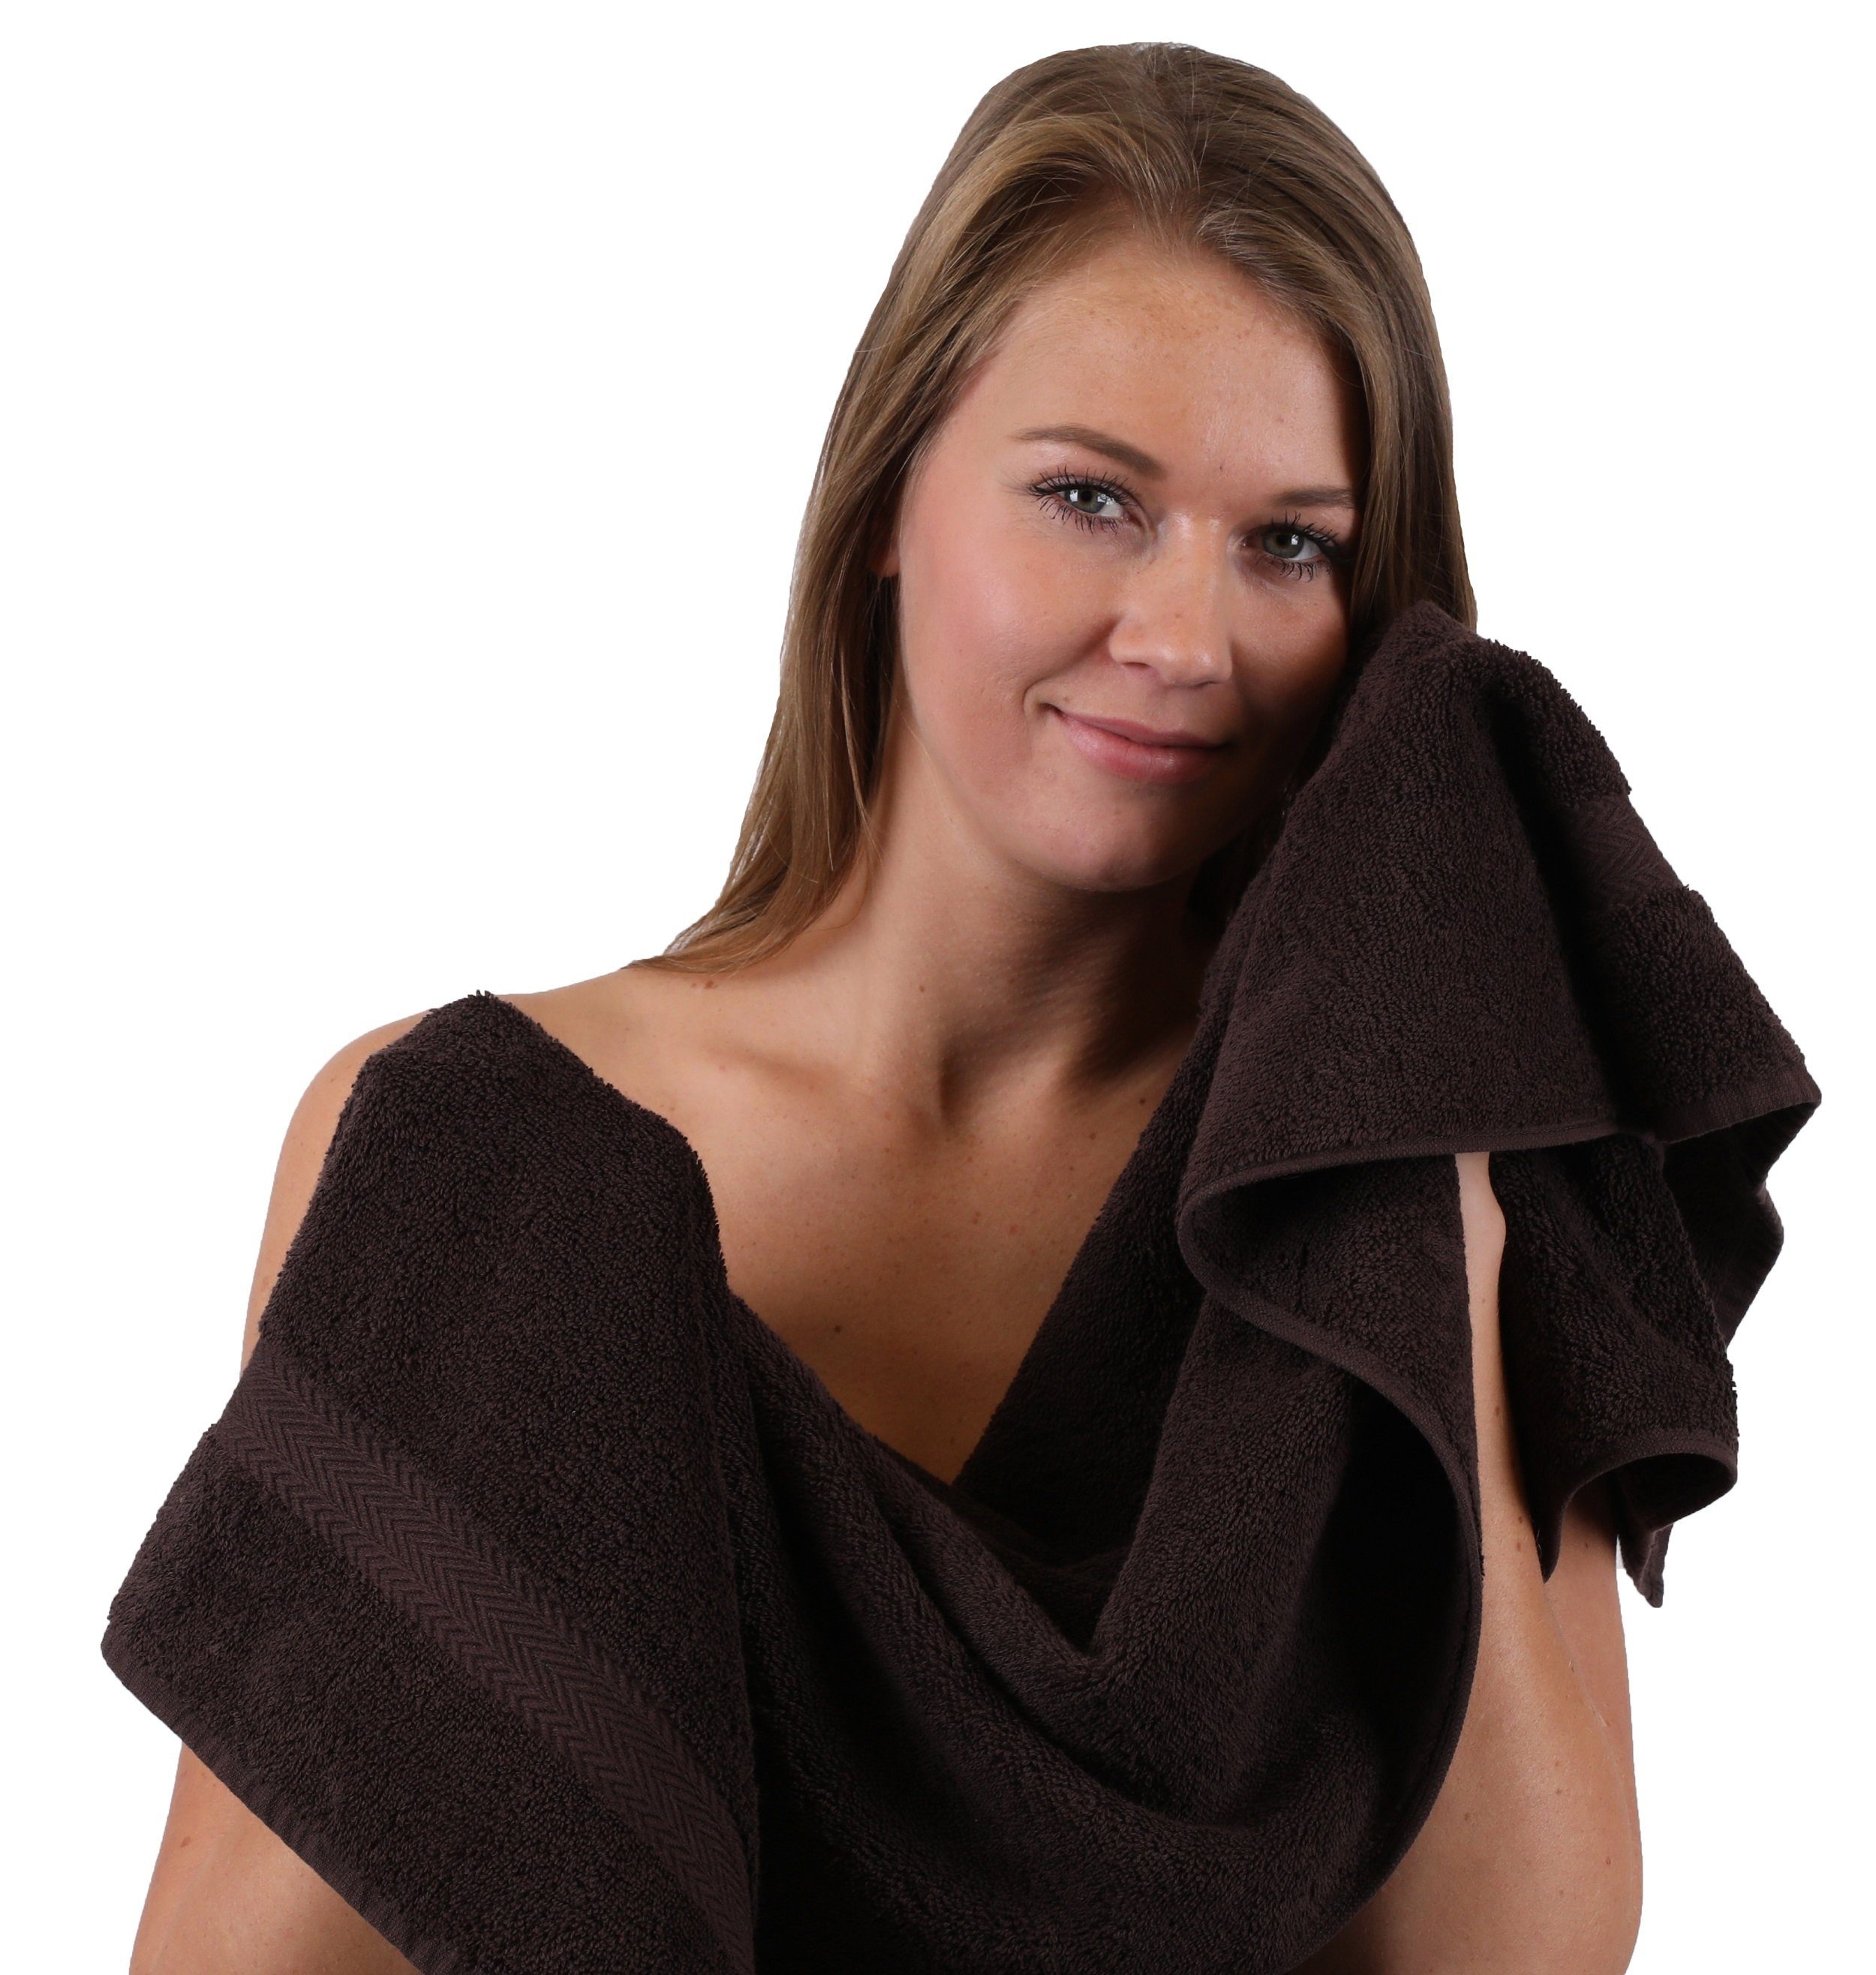 Betz Handtuch Set dunkelbraun Classic Baumwolle Farbe und 100% anthrazit, 10-TLG. Handtuch-Set